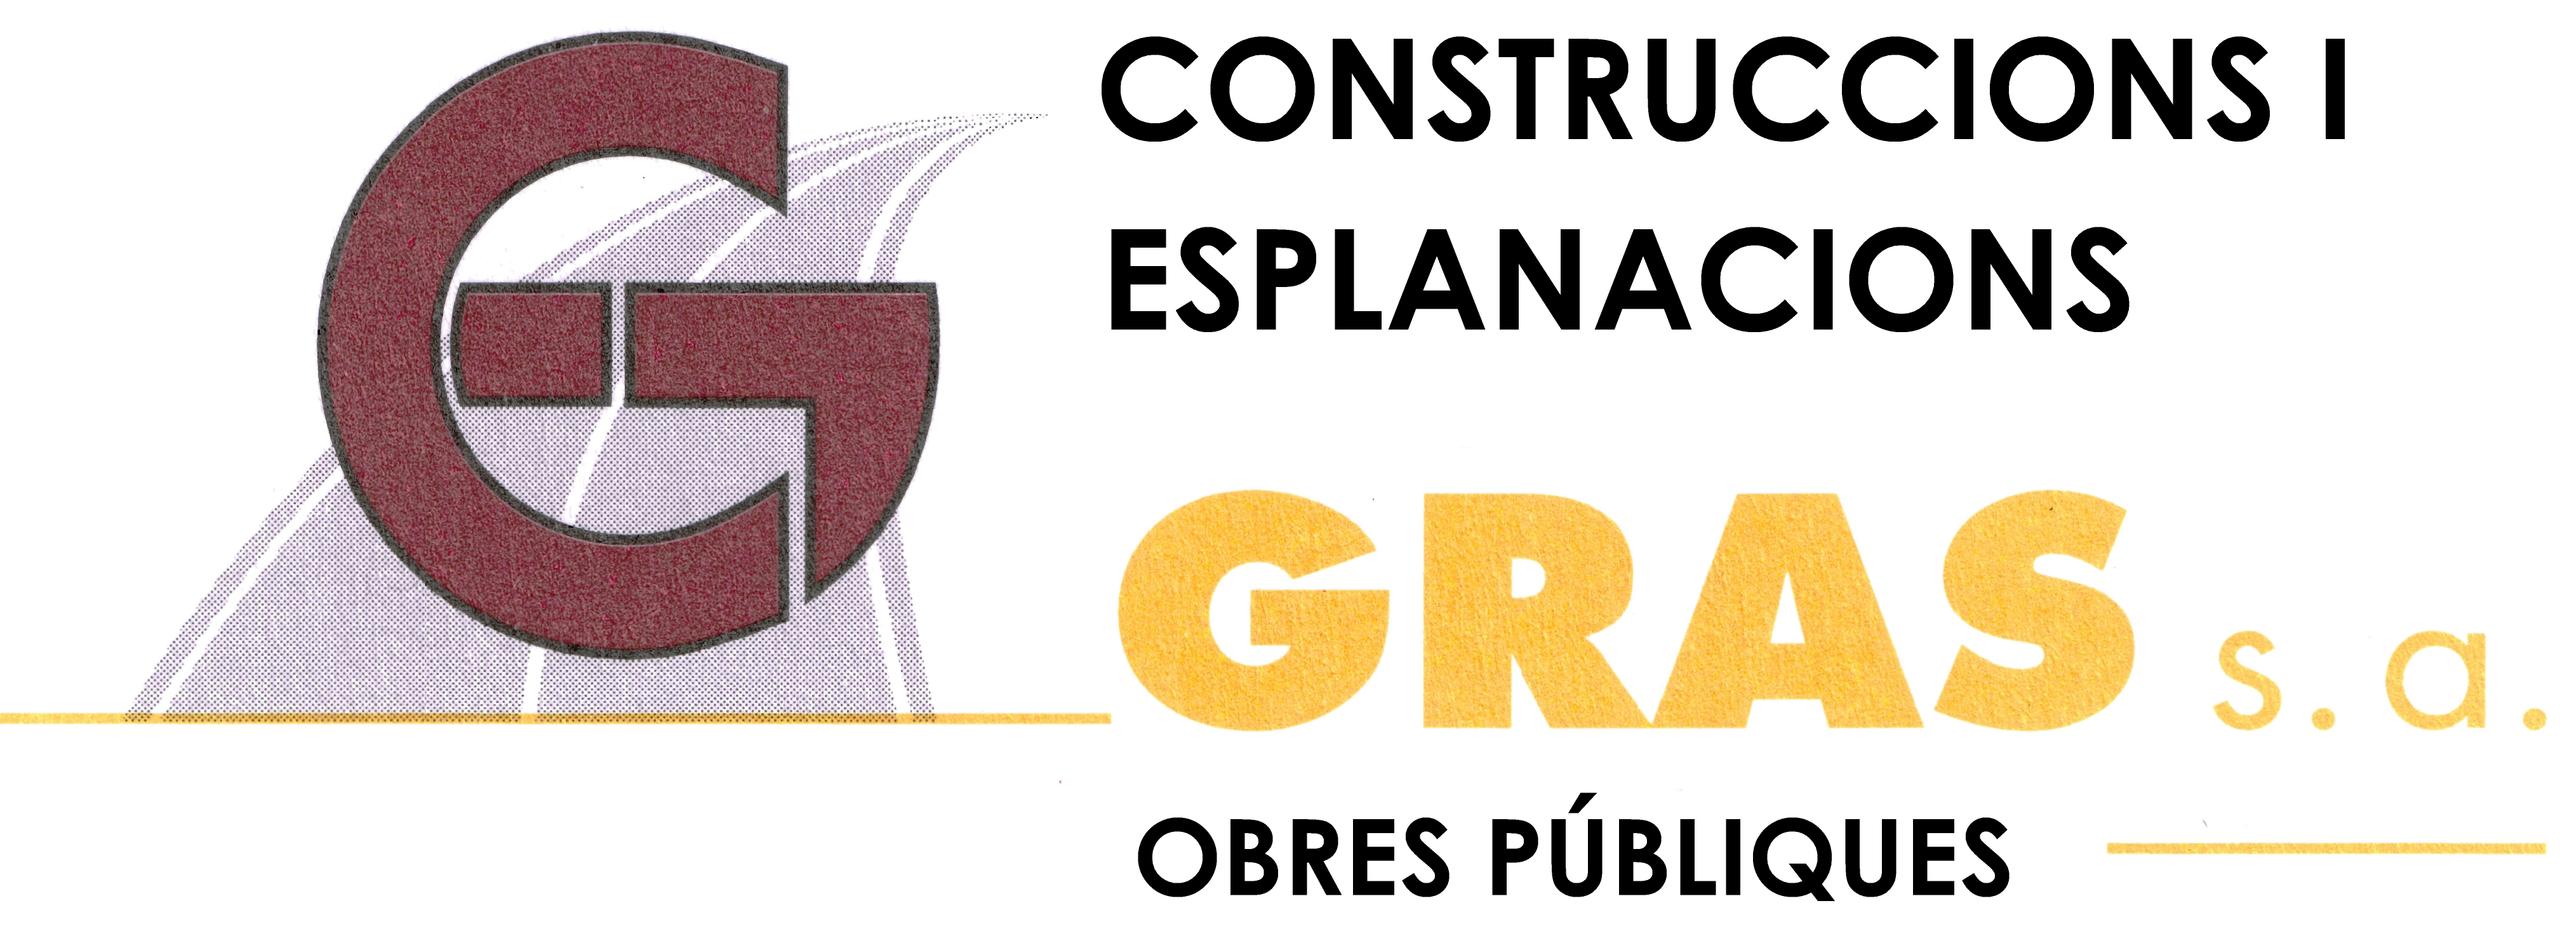 CONSTRUCCIONES Y EXPLANACIONES GRAS S.A.